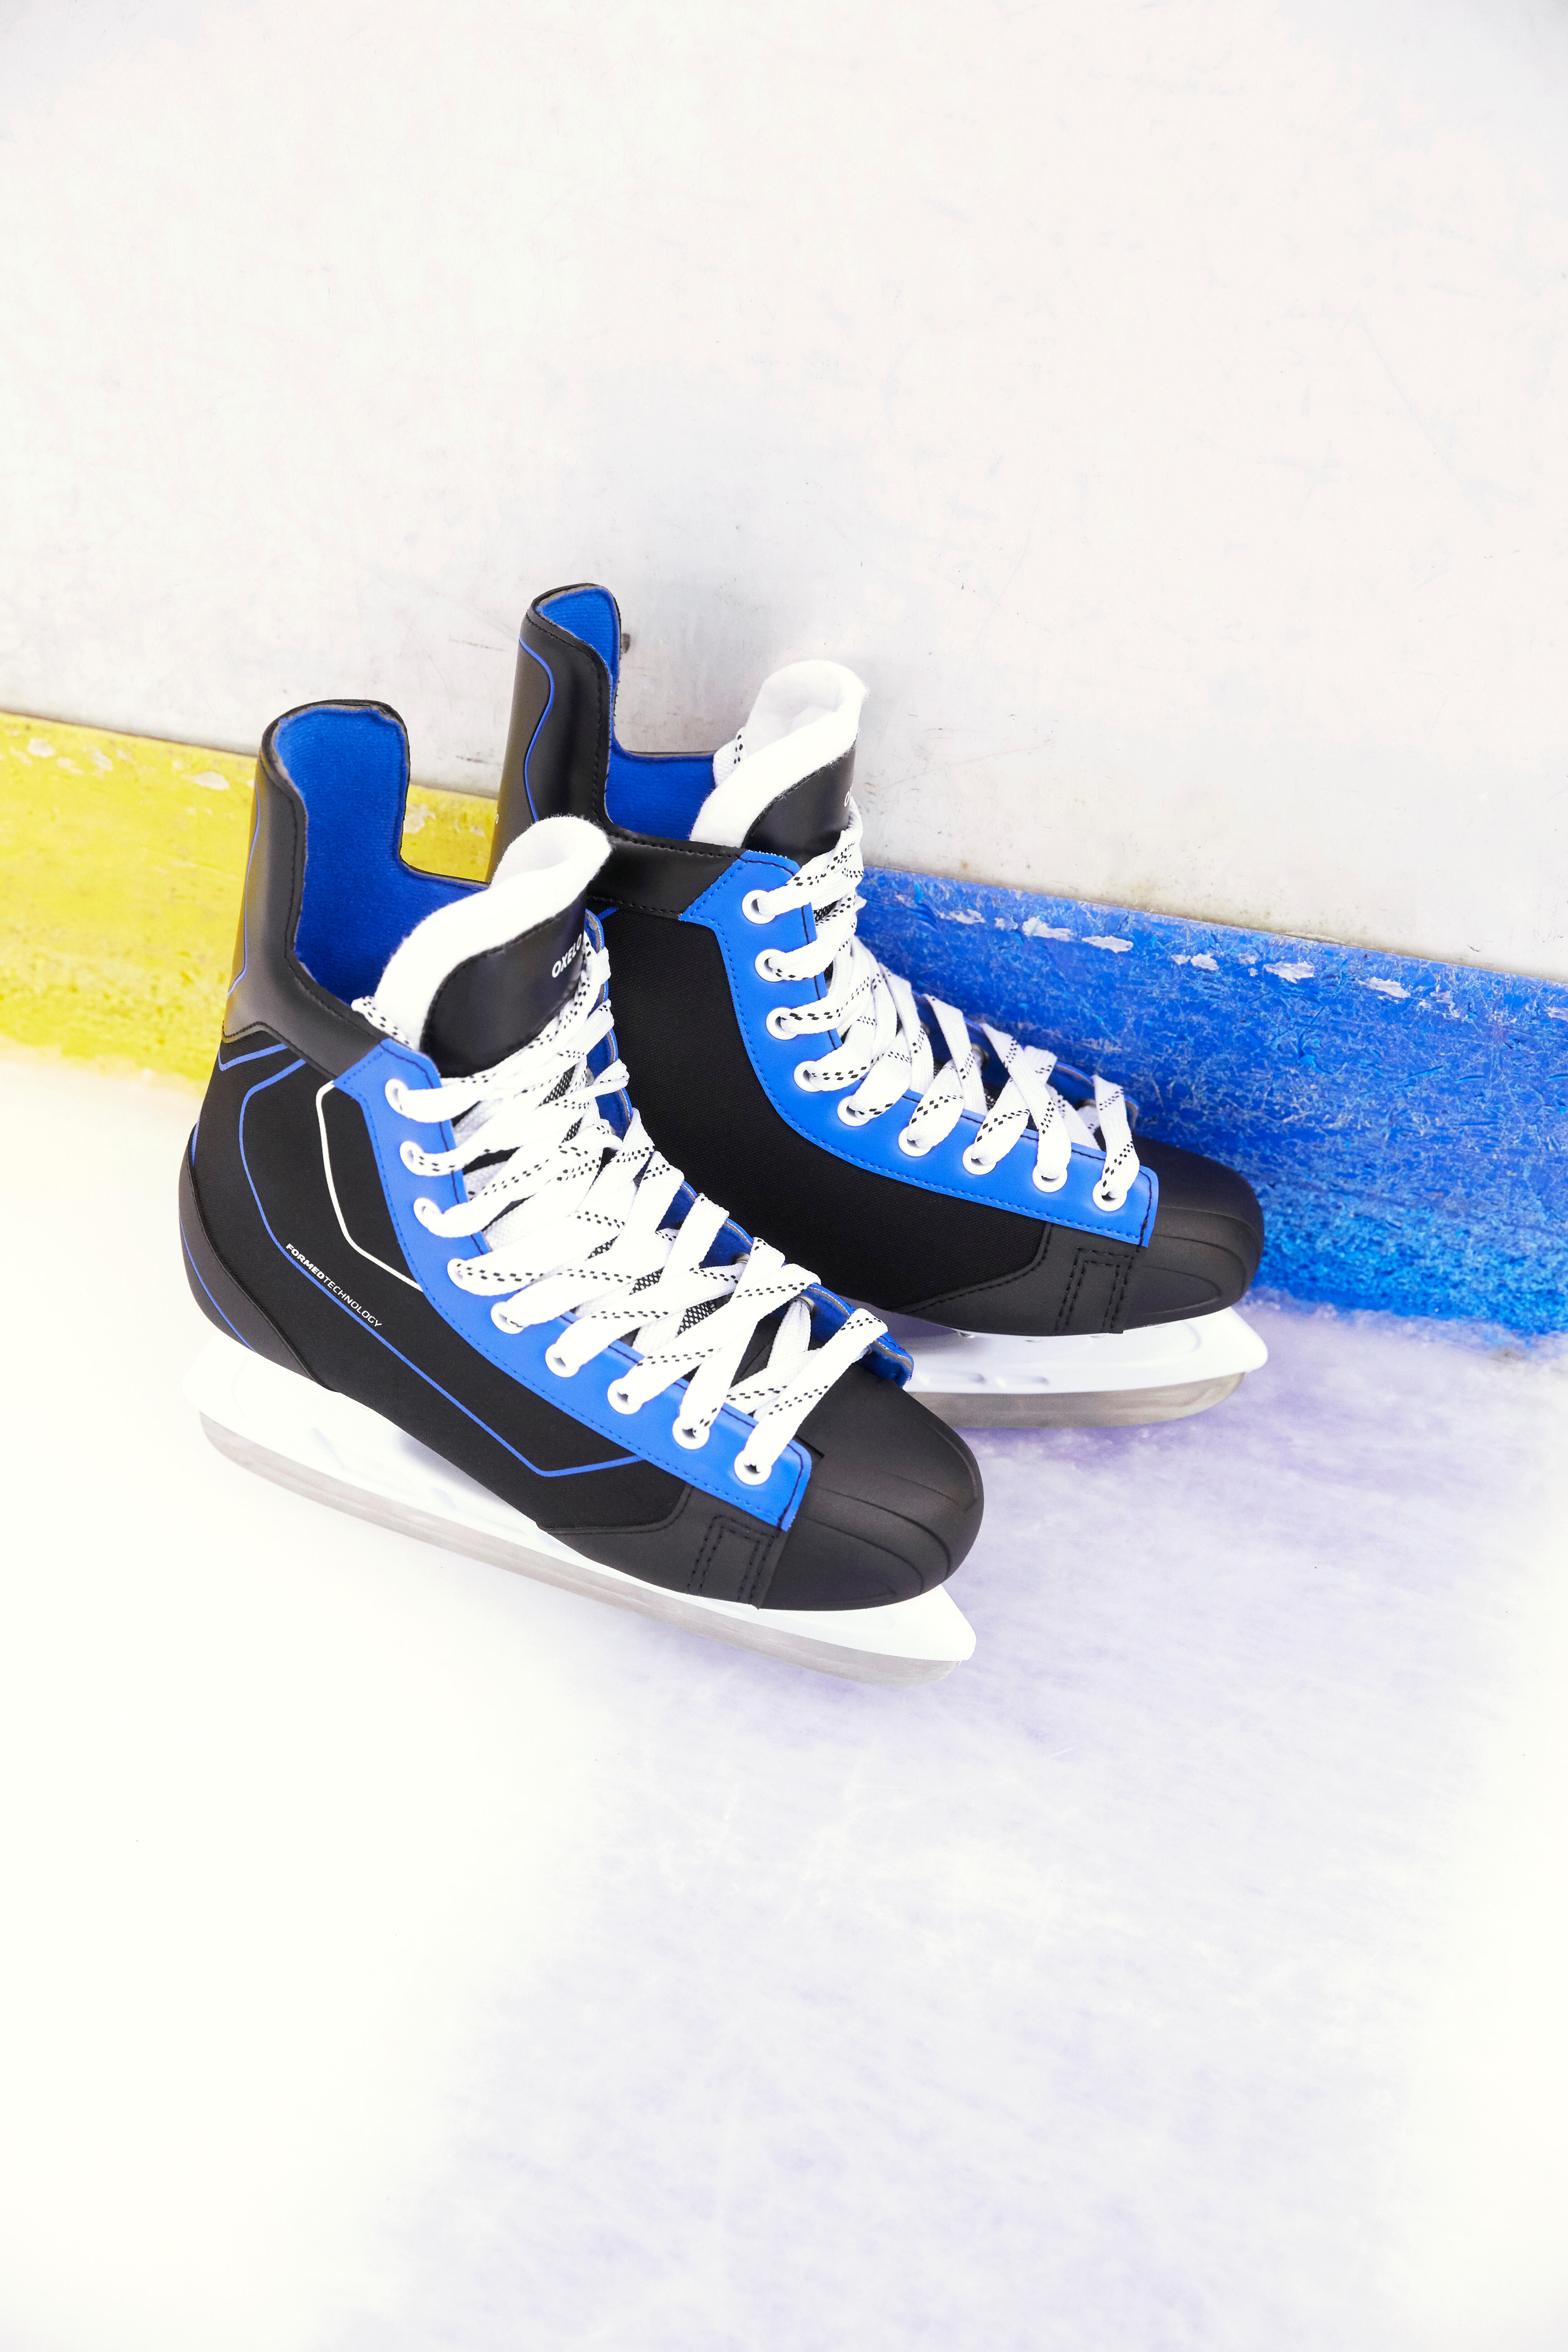 Ice Hockey Skates - IH 100  - OROKS